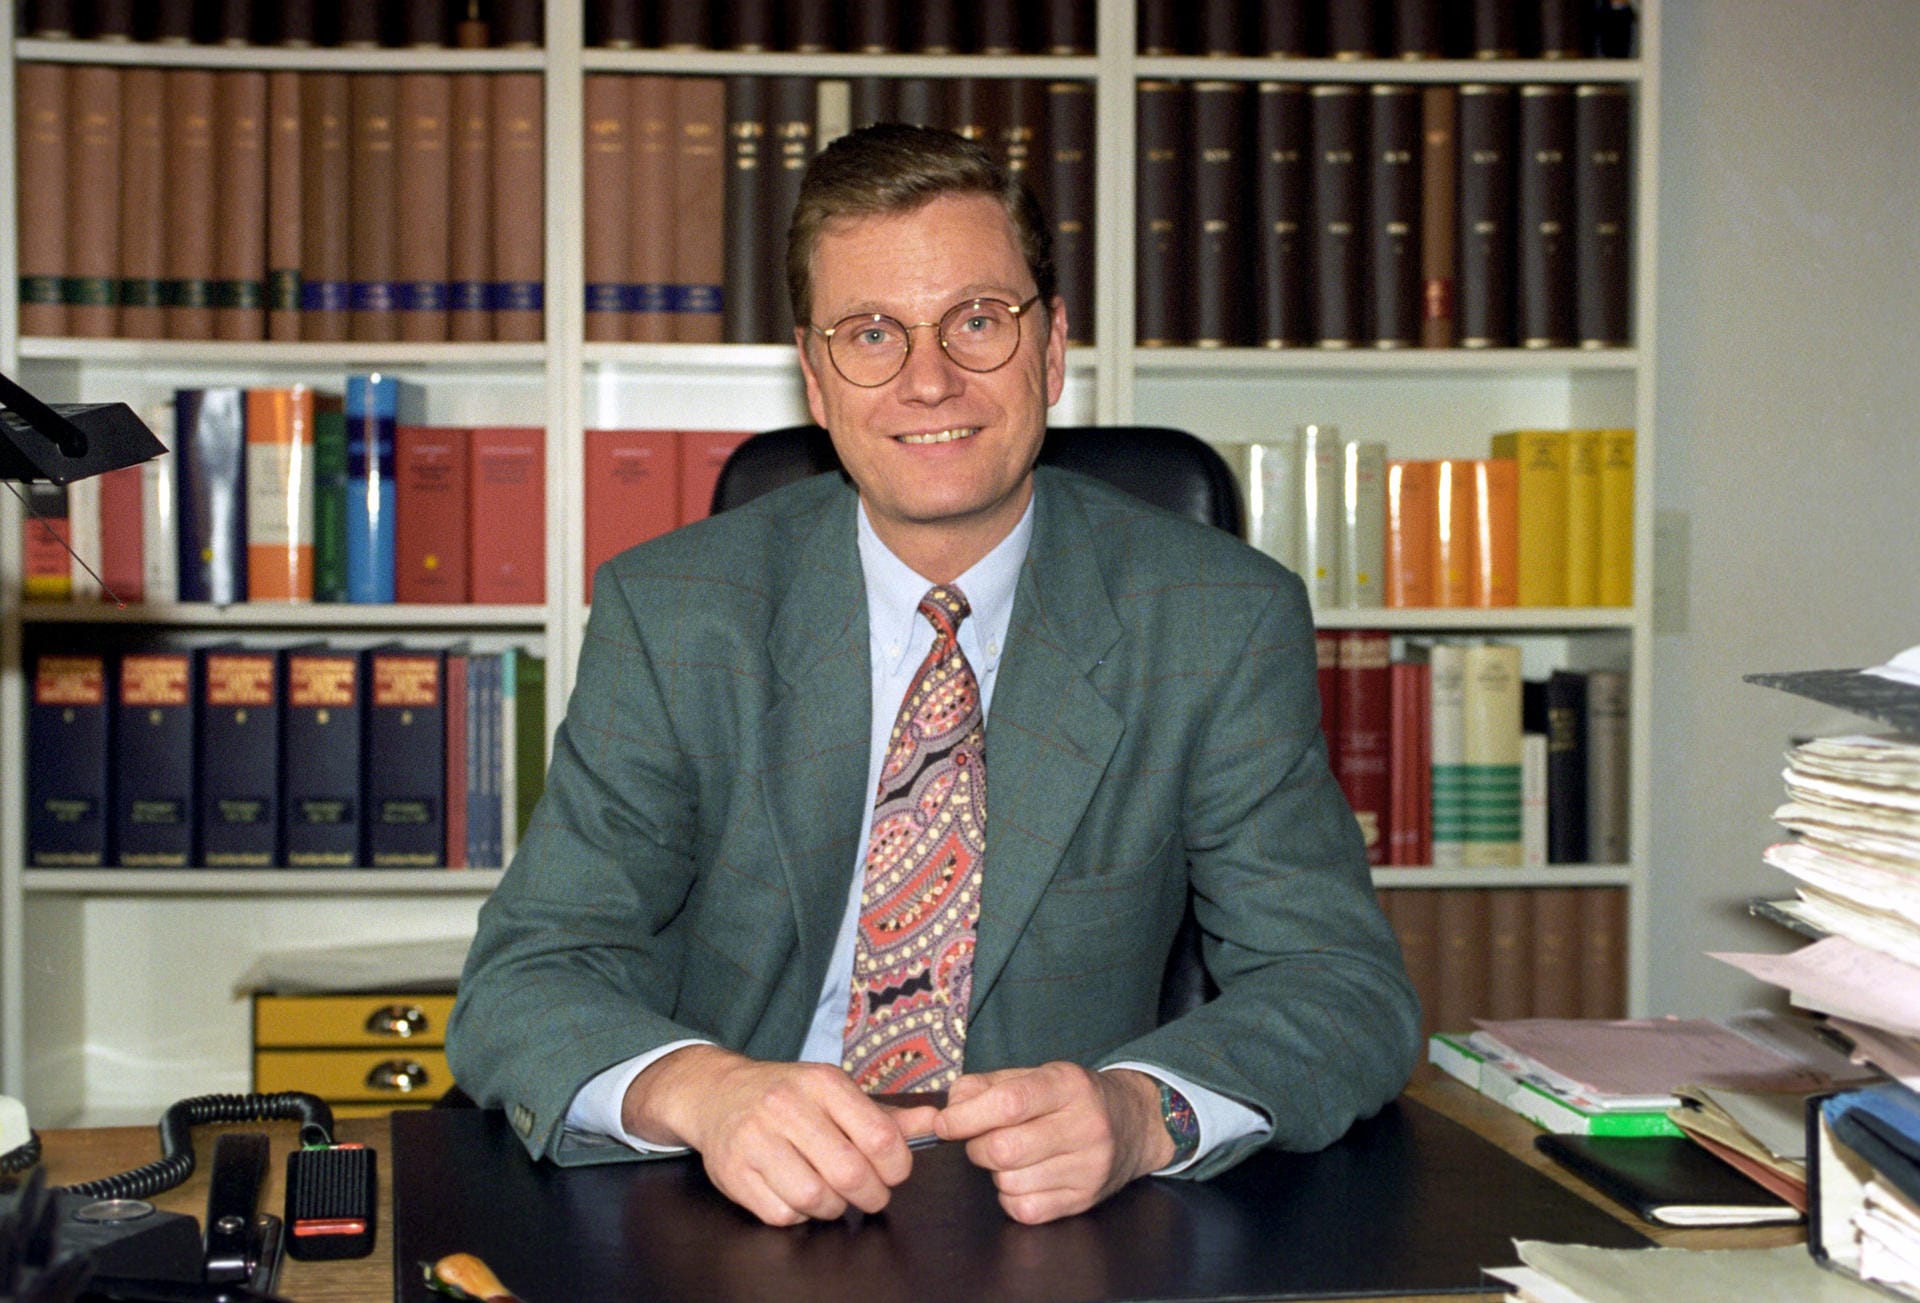 Der studierte Rechtsanwalt 1994 mit 32 Jahren in seinem Büro in Bonn. In diesem Jahr wurde er auch Generalsekretär der FDP.